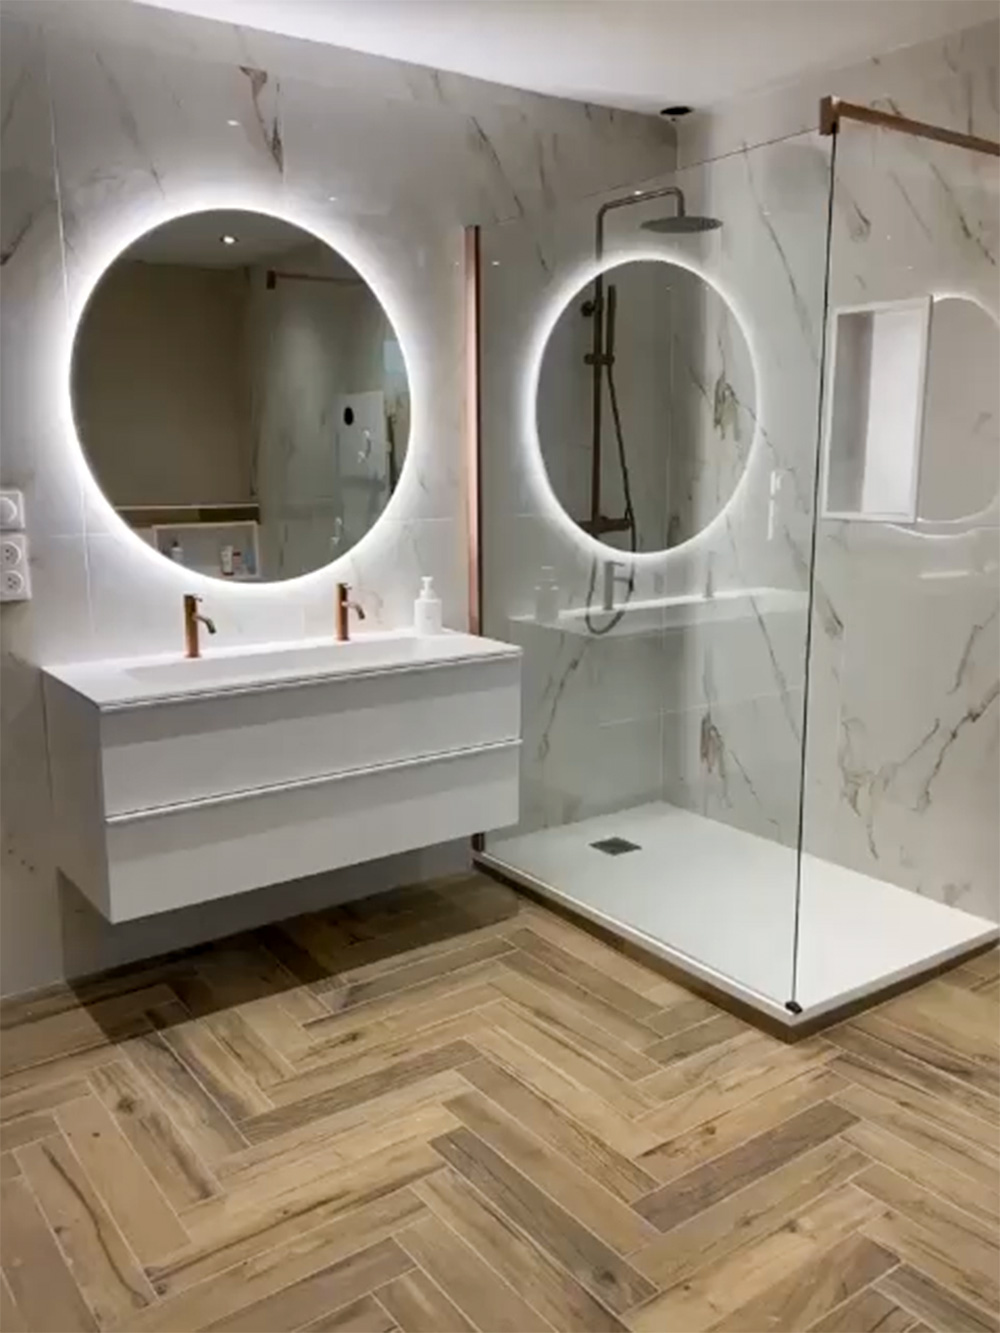 Après travaux, la salle de bain est élégante et fonctionnelle